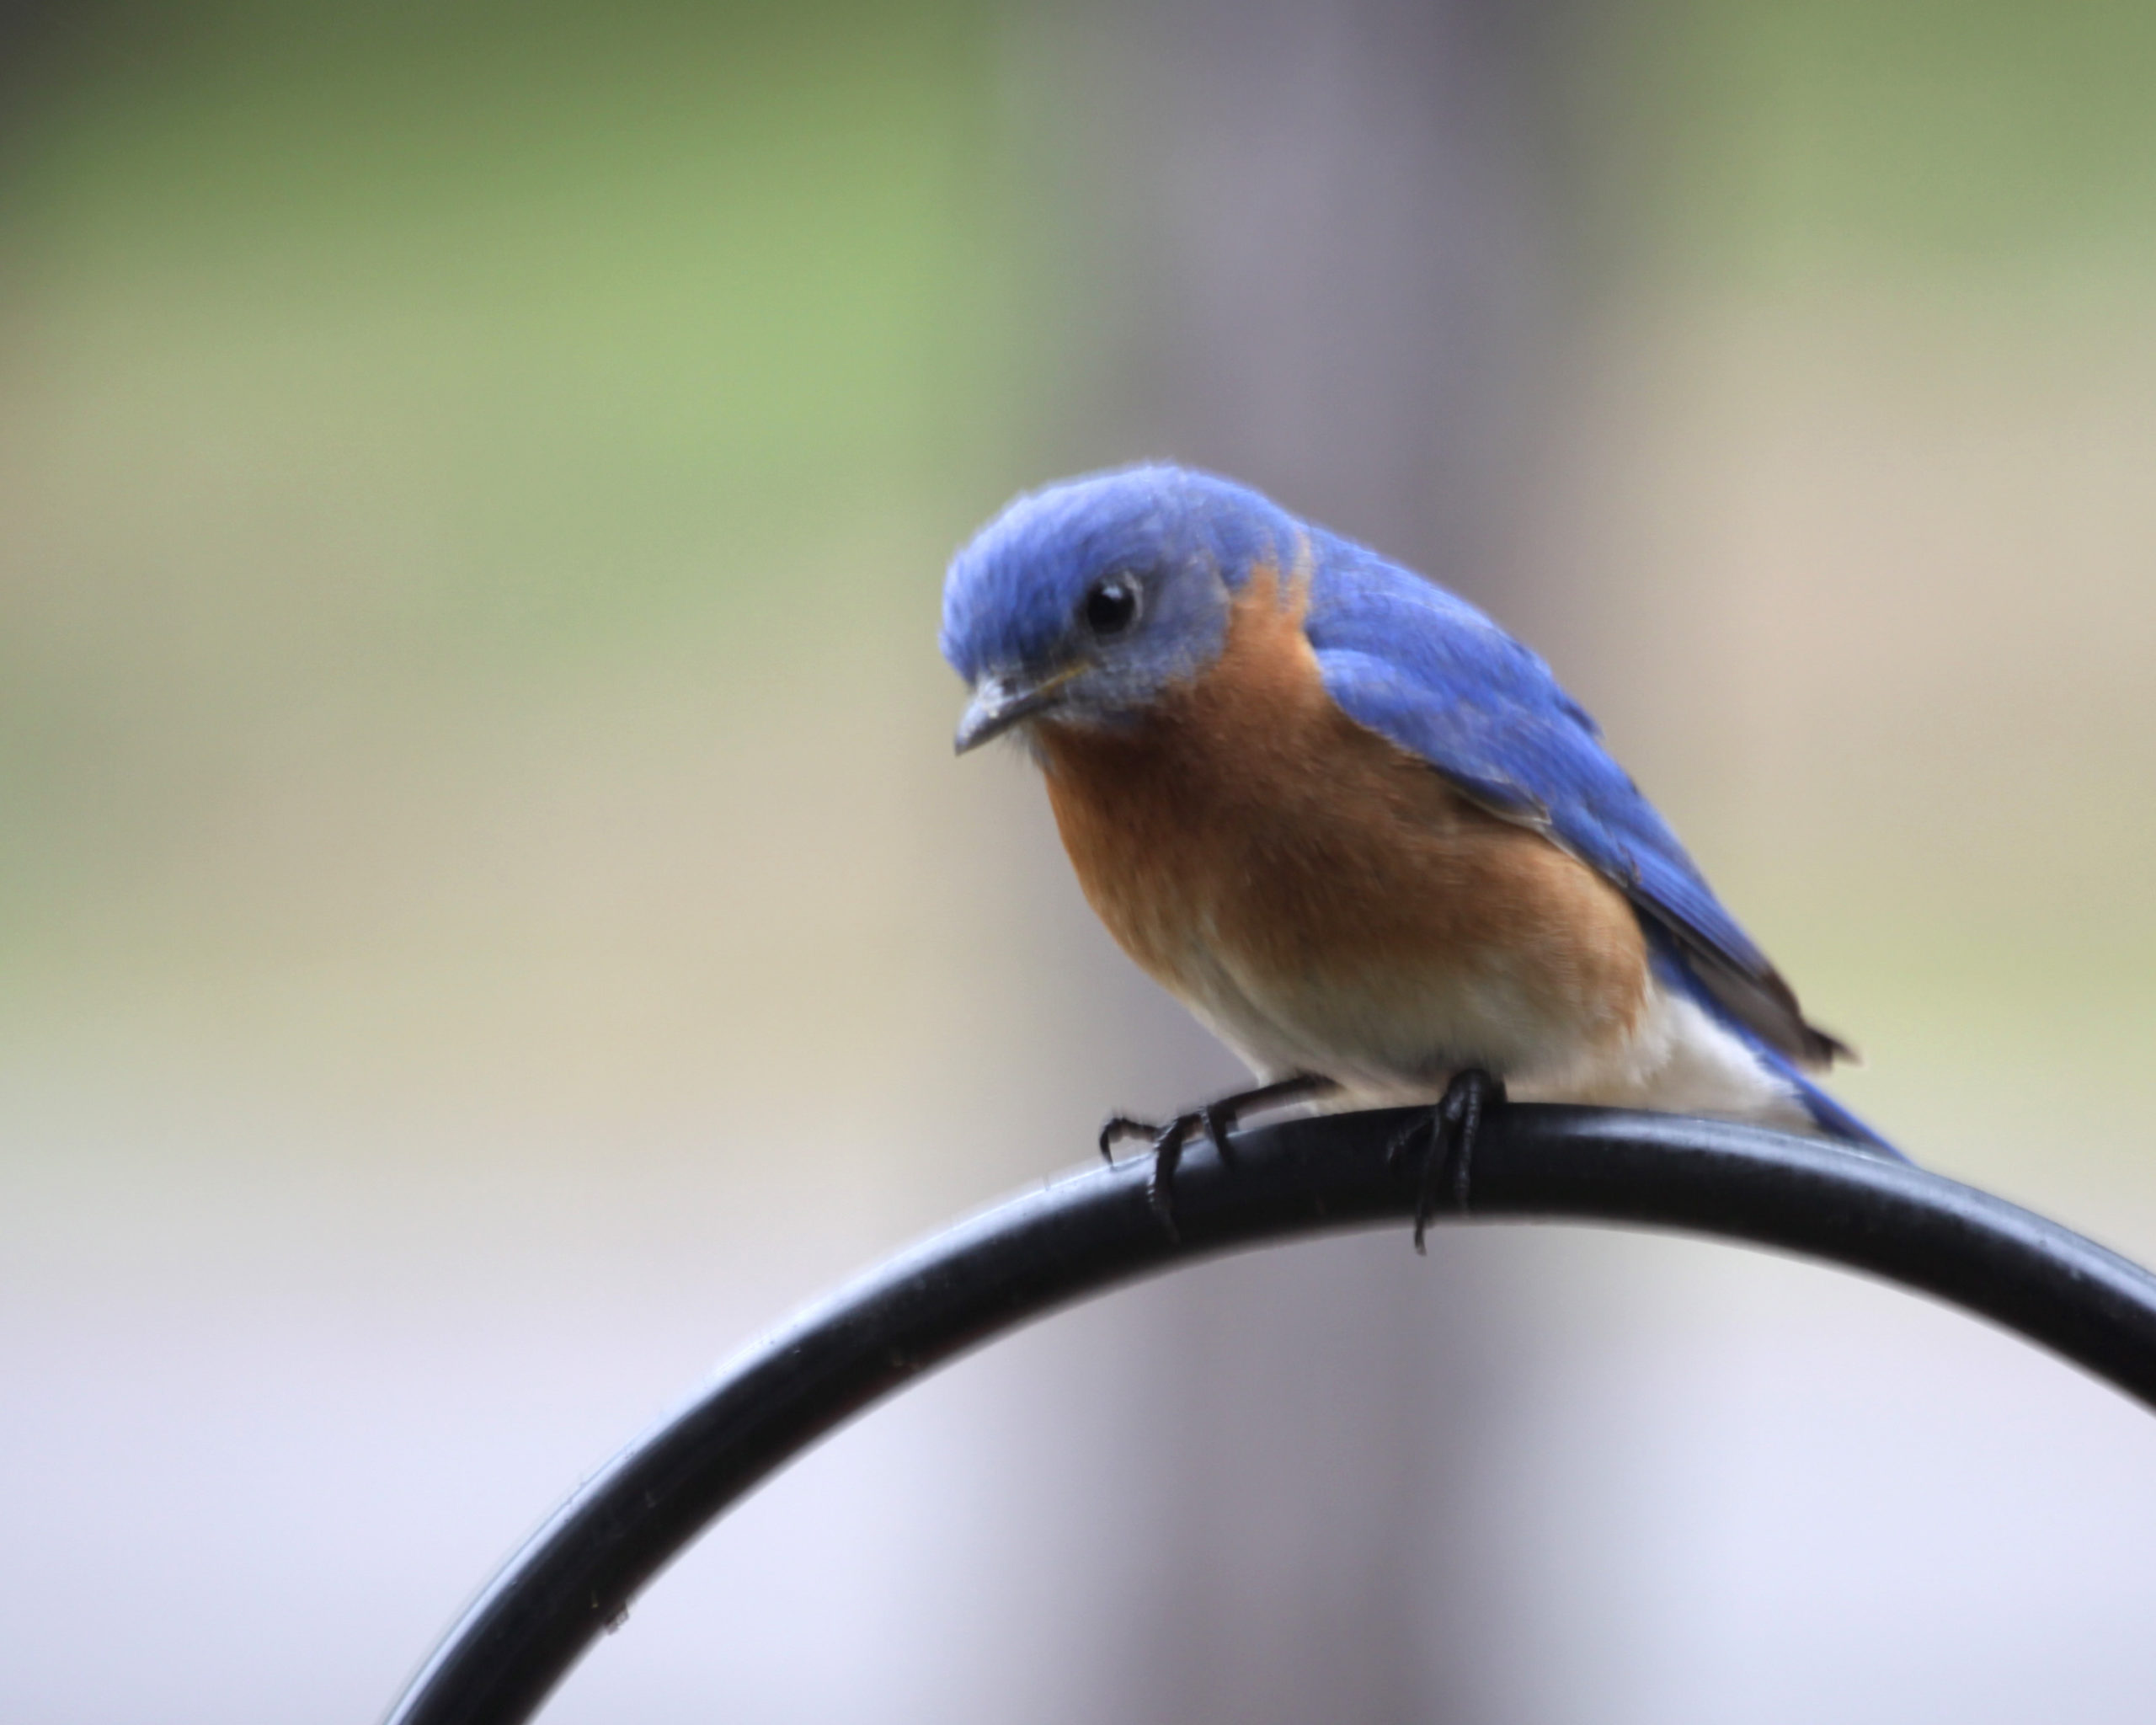 Image of bluebird